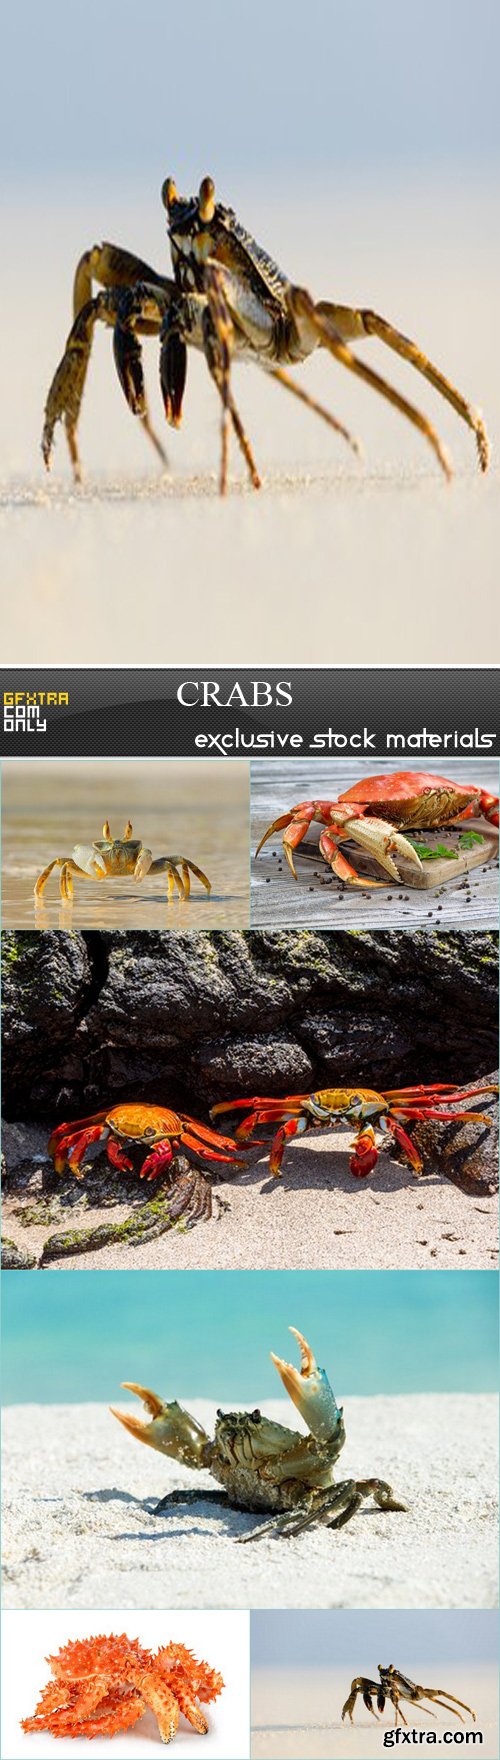 Crabs - 6 JPREG